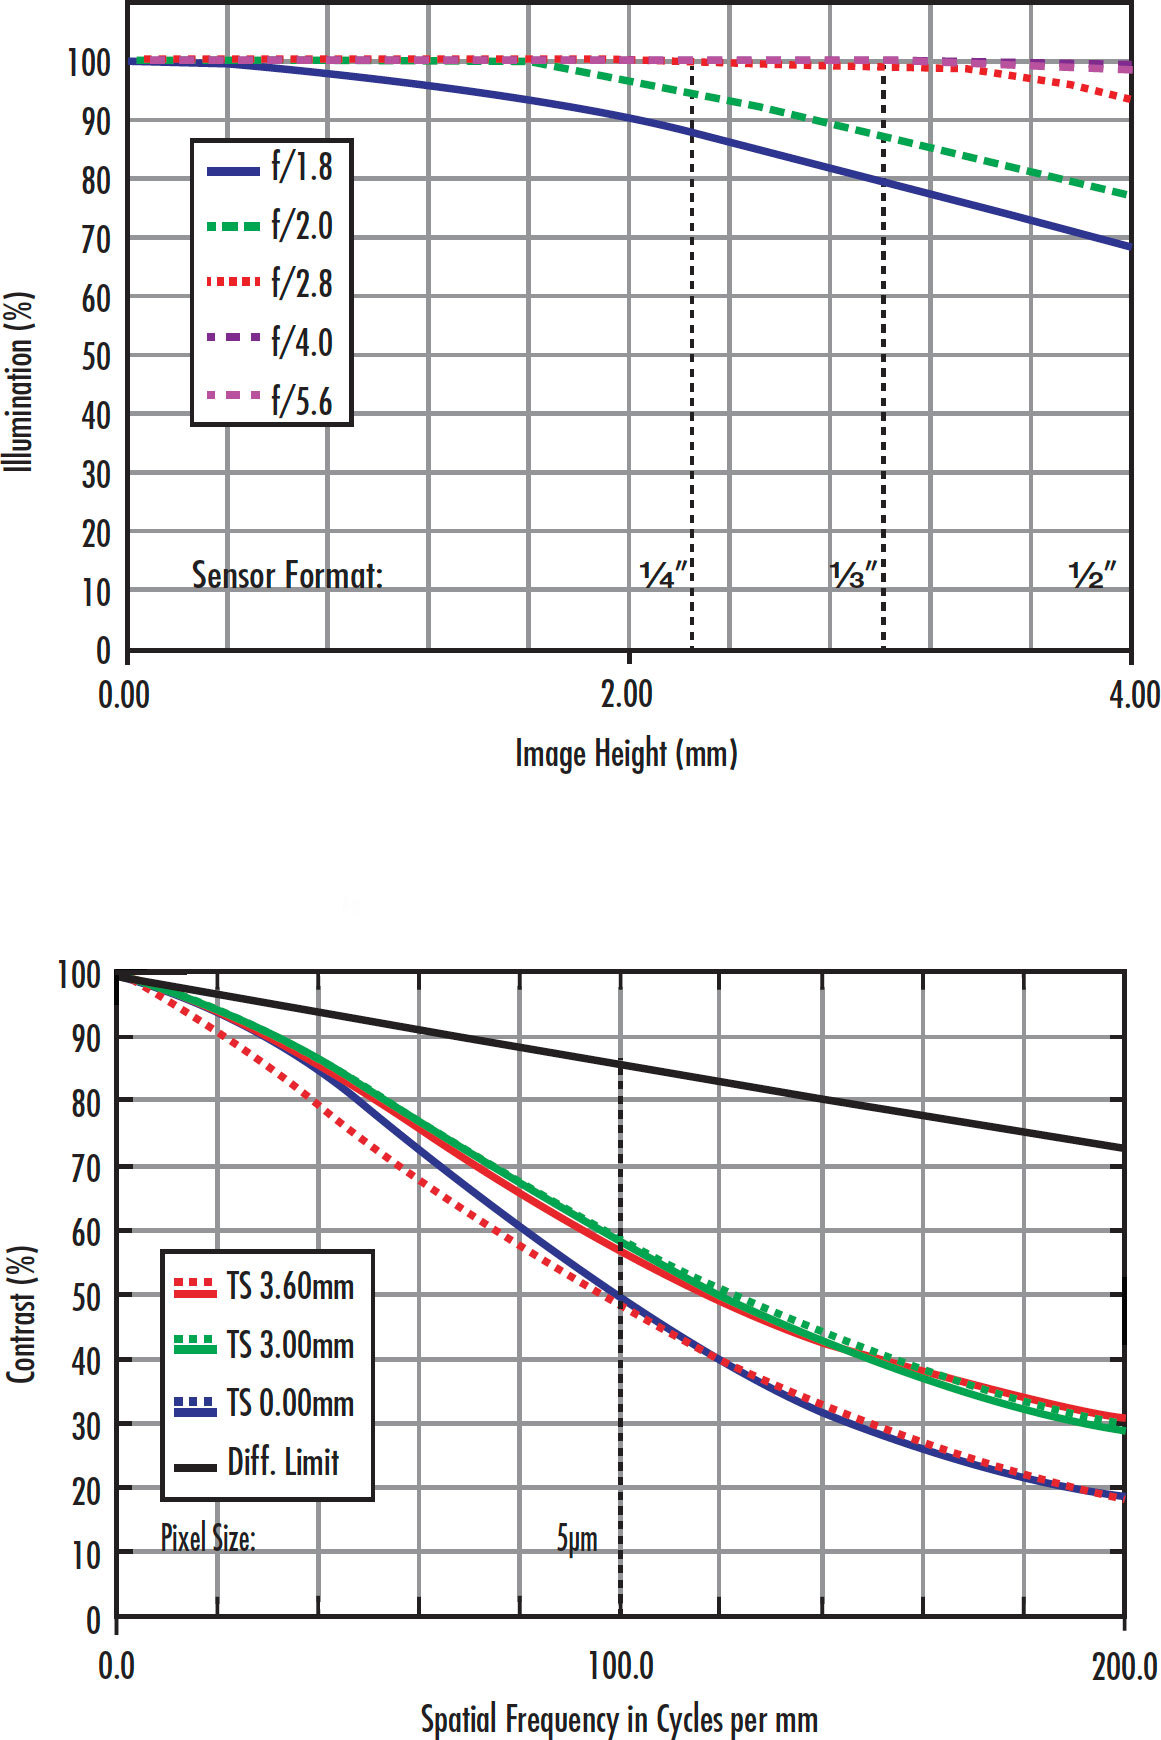 Figure 1: 高解像力25mmレンズを異なる条件にした時のMTF曲線。同じレンズでも、使用条件が変わってしまえば別物の曲線になってしまうことを端的に表す。